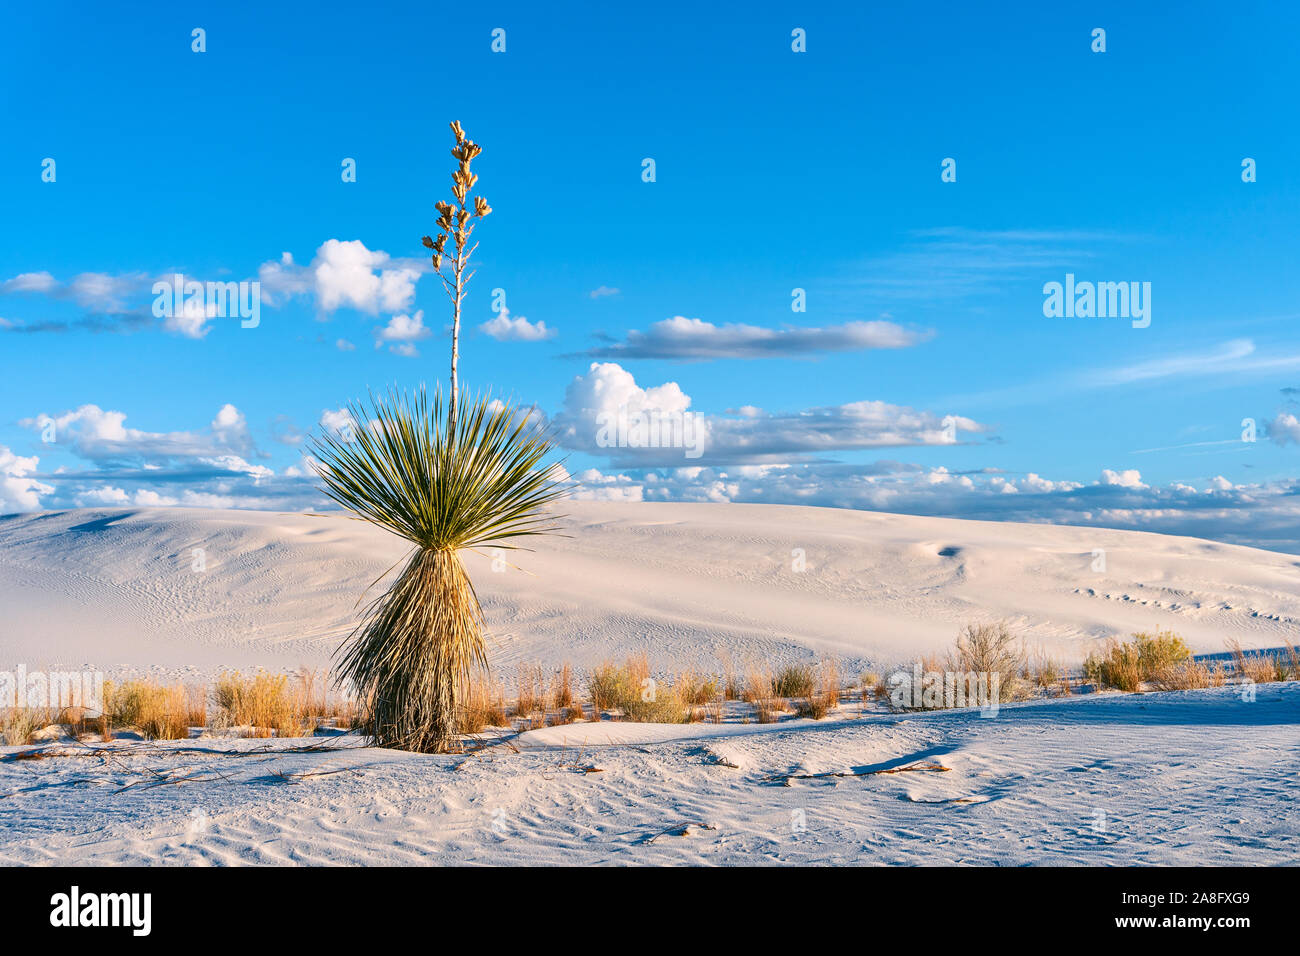 Paisaje escénico del desierto con una yuca soaptree contra dunas de arena y cielo azul en el Parque Nacional White Sands, Nuevo México, Estados Unidos Foto de stock